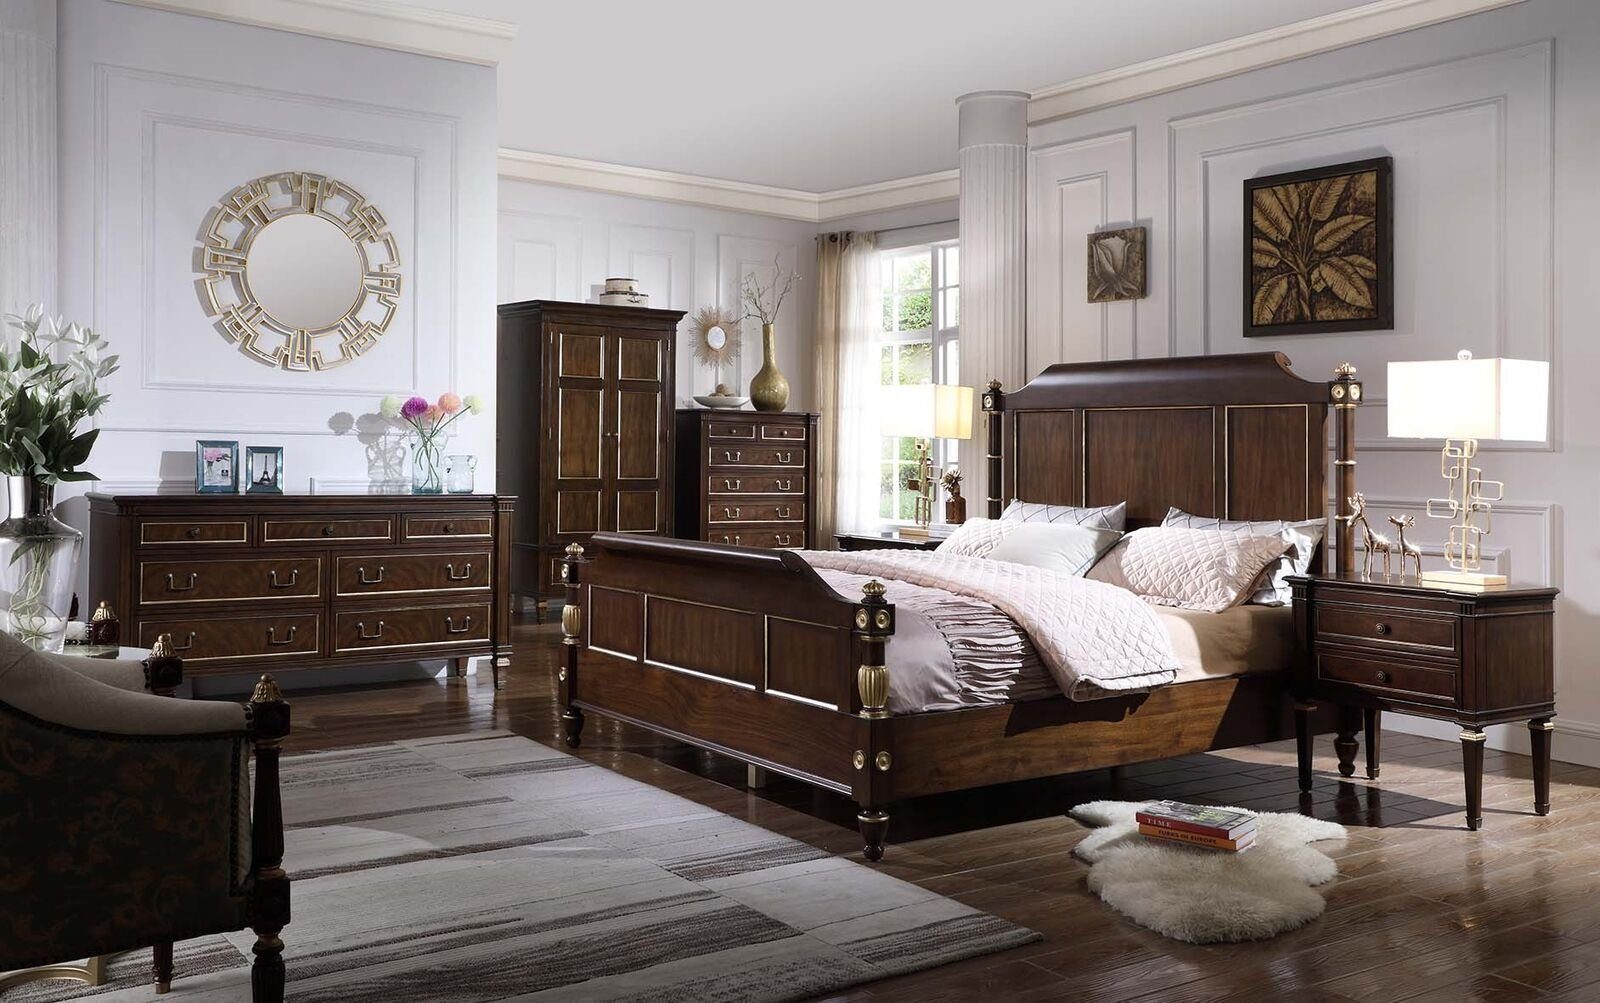 Holz, JVmoebel Schlafzimmer Nachttische 3tlg neu Design Modern In Bett Set Schlafzimmer-Set 2x Made Europe Luxus